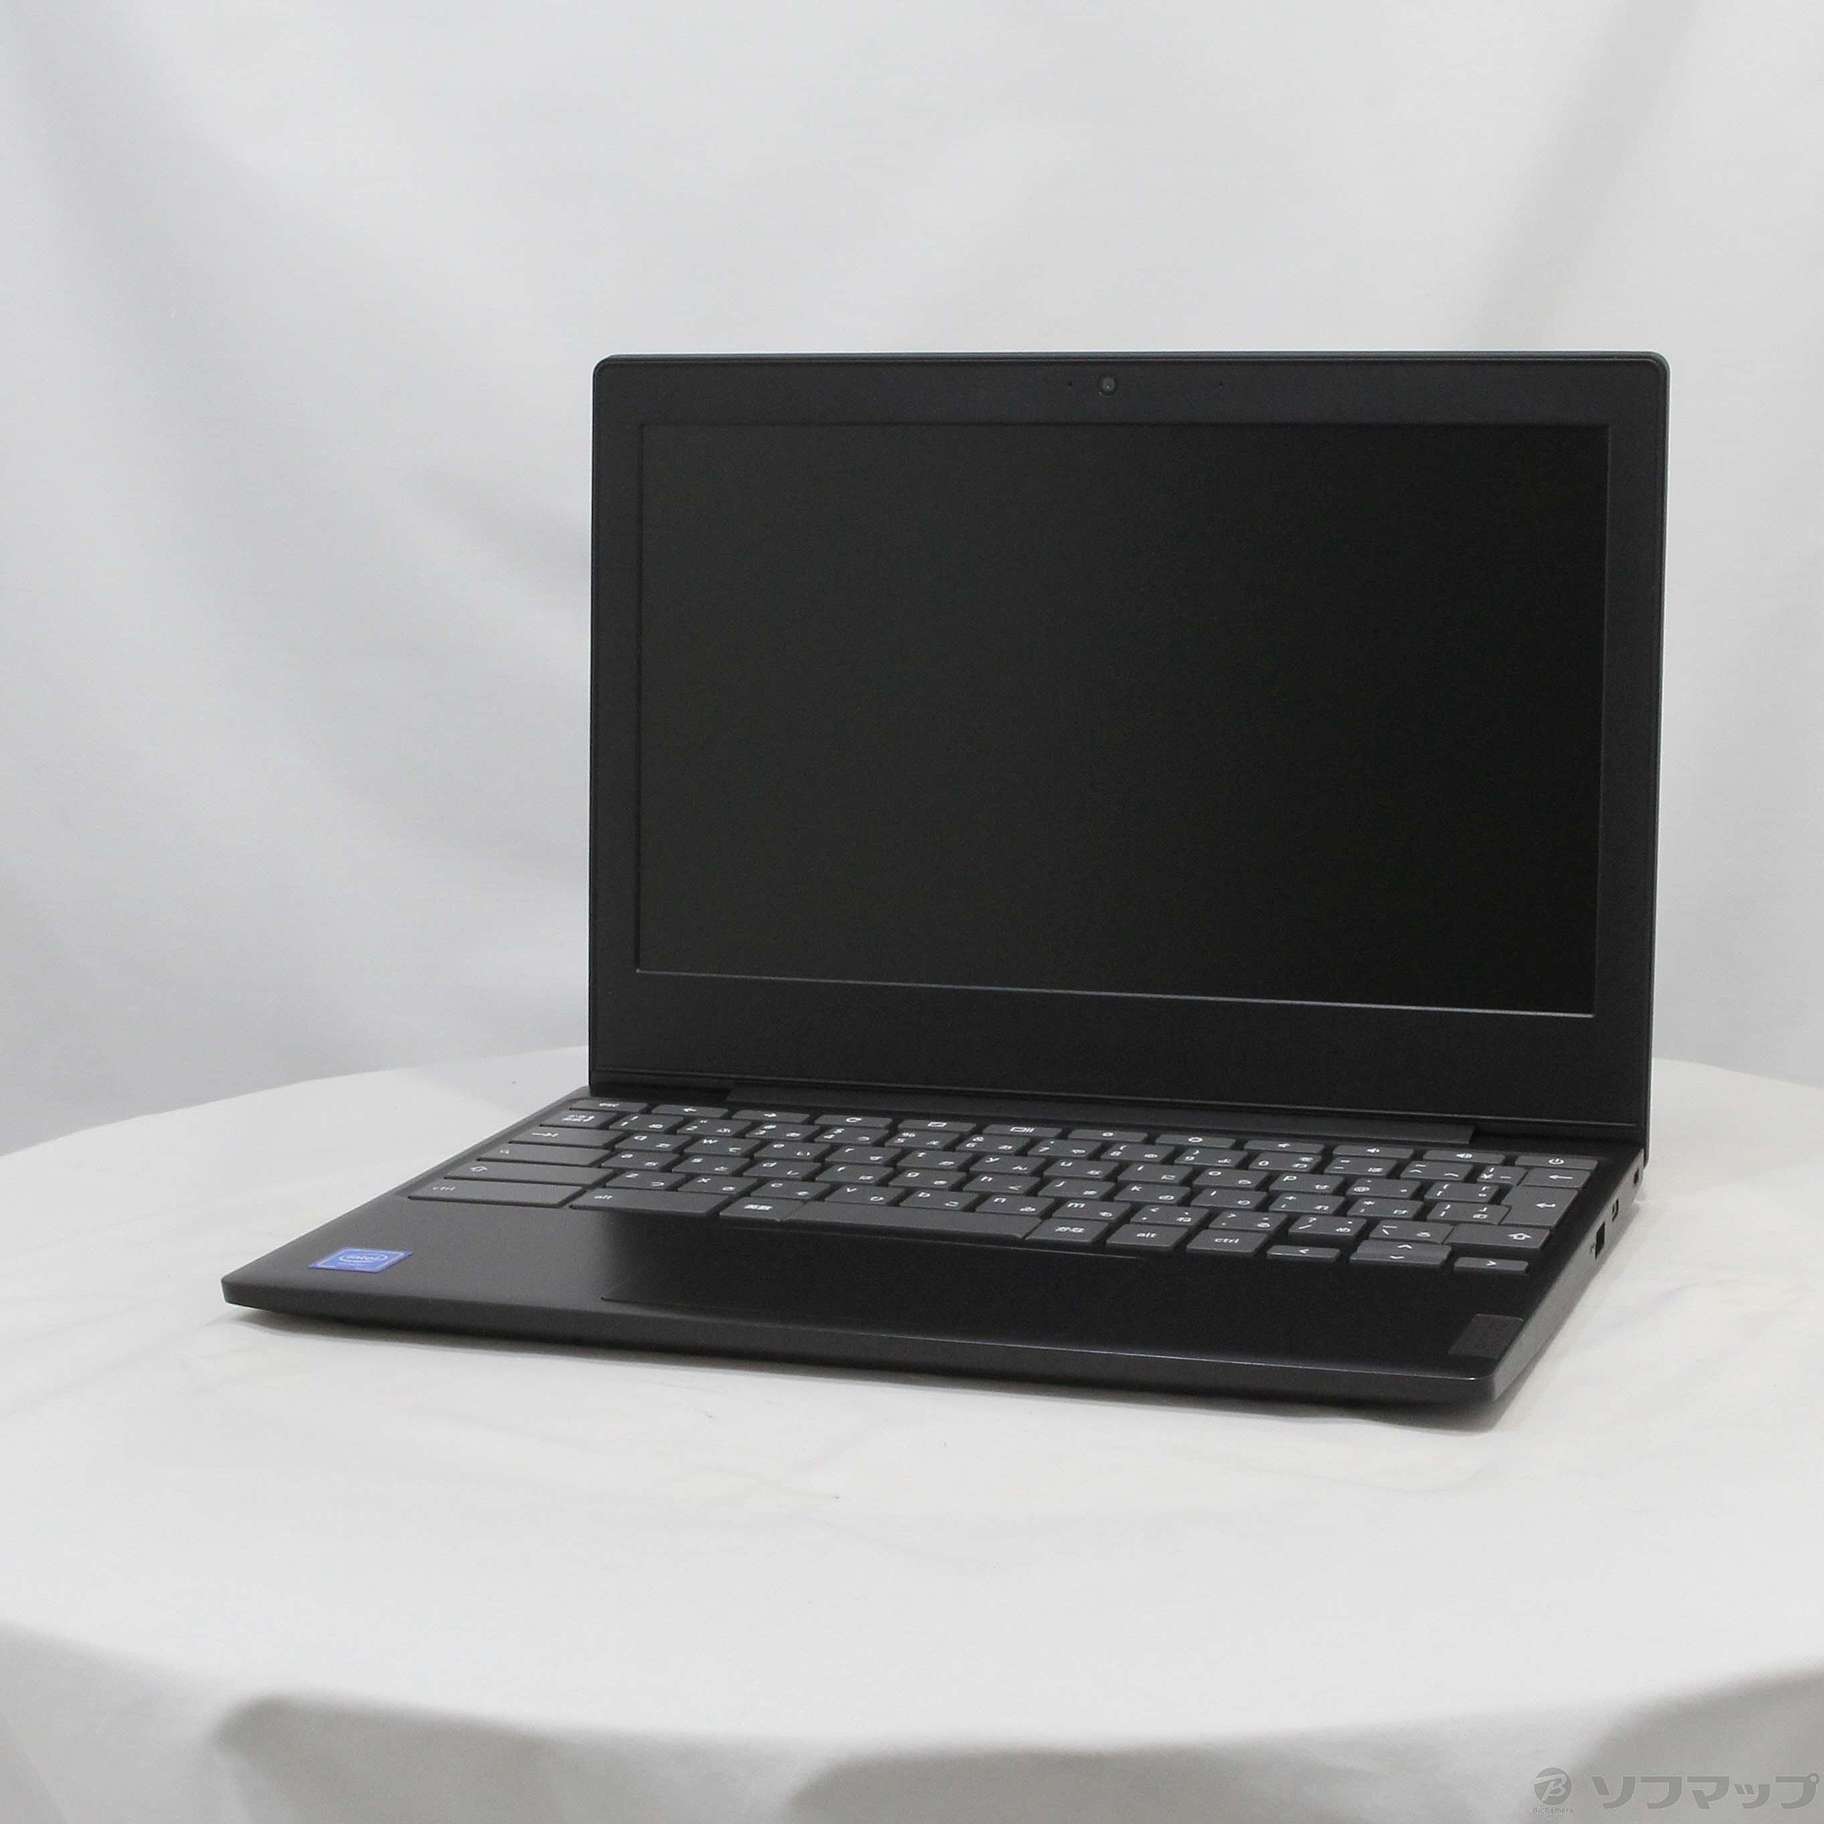 〔展示品〕 ideapad Slim 350i Chromebook 82BA000LJP オニキスブラック